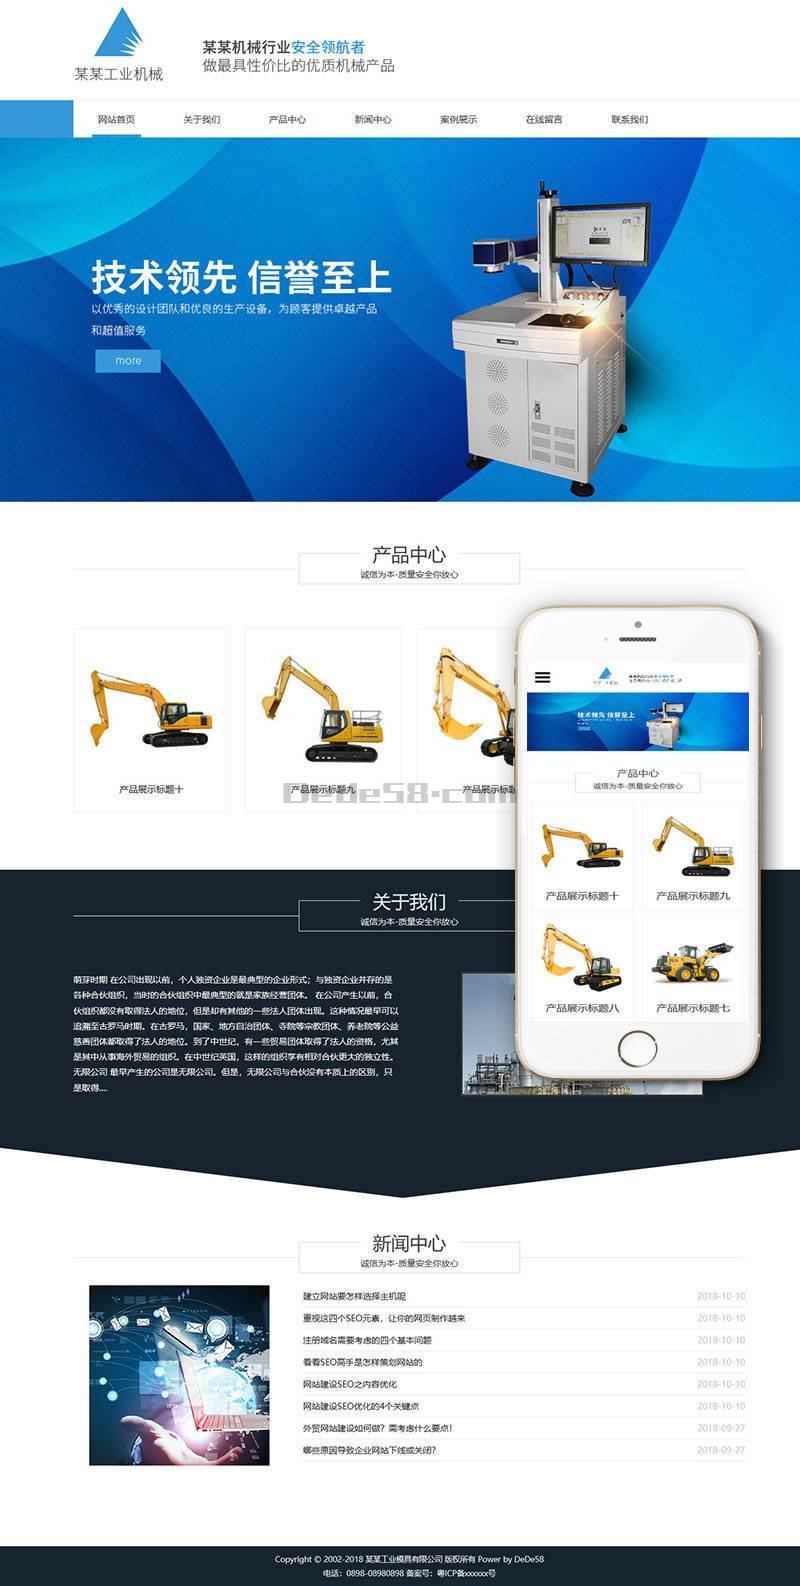 M388 响应式工业模具类企业网站织梦源码 蓝色工业模具企业网站模版